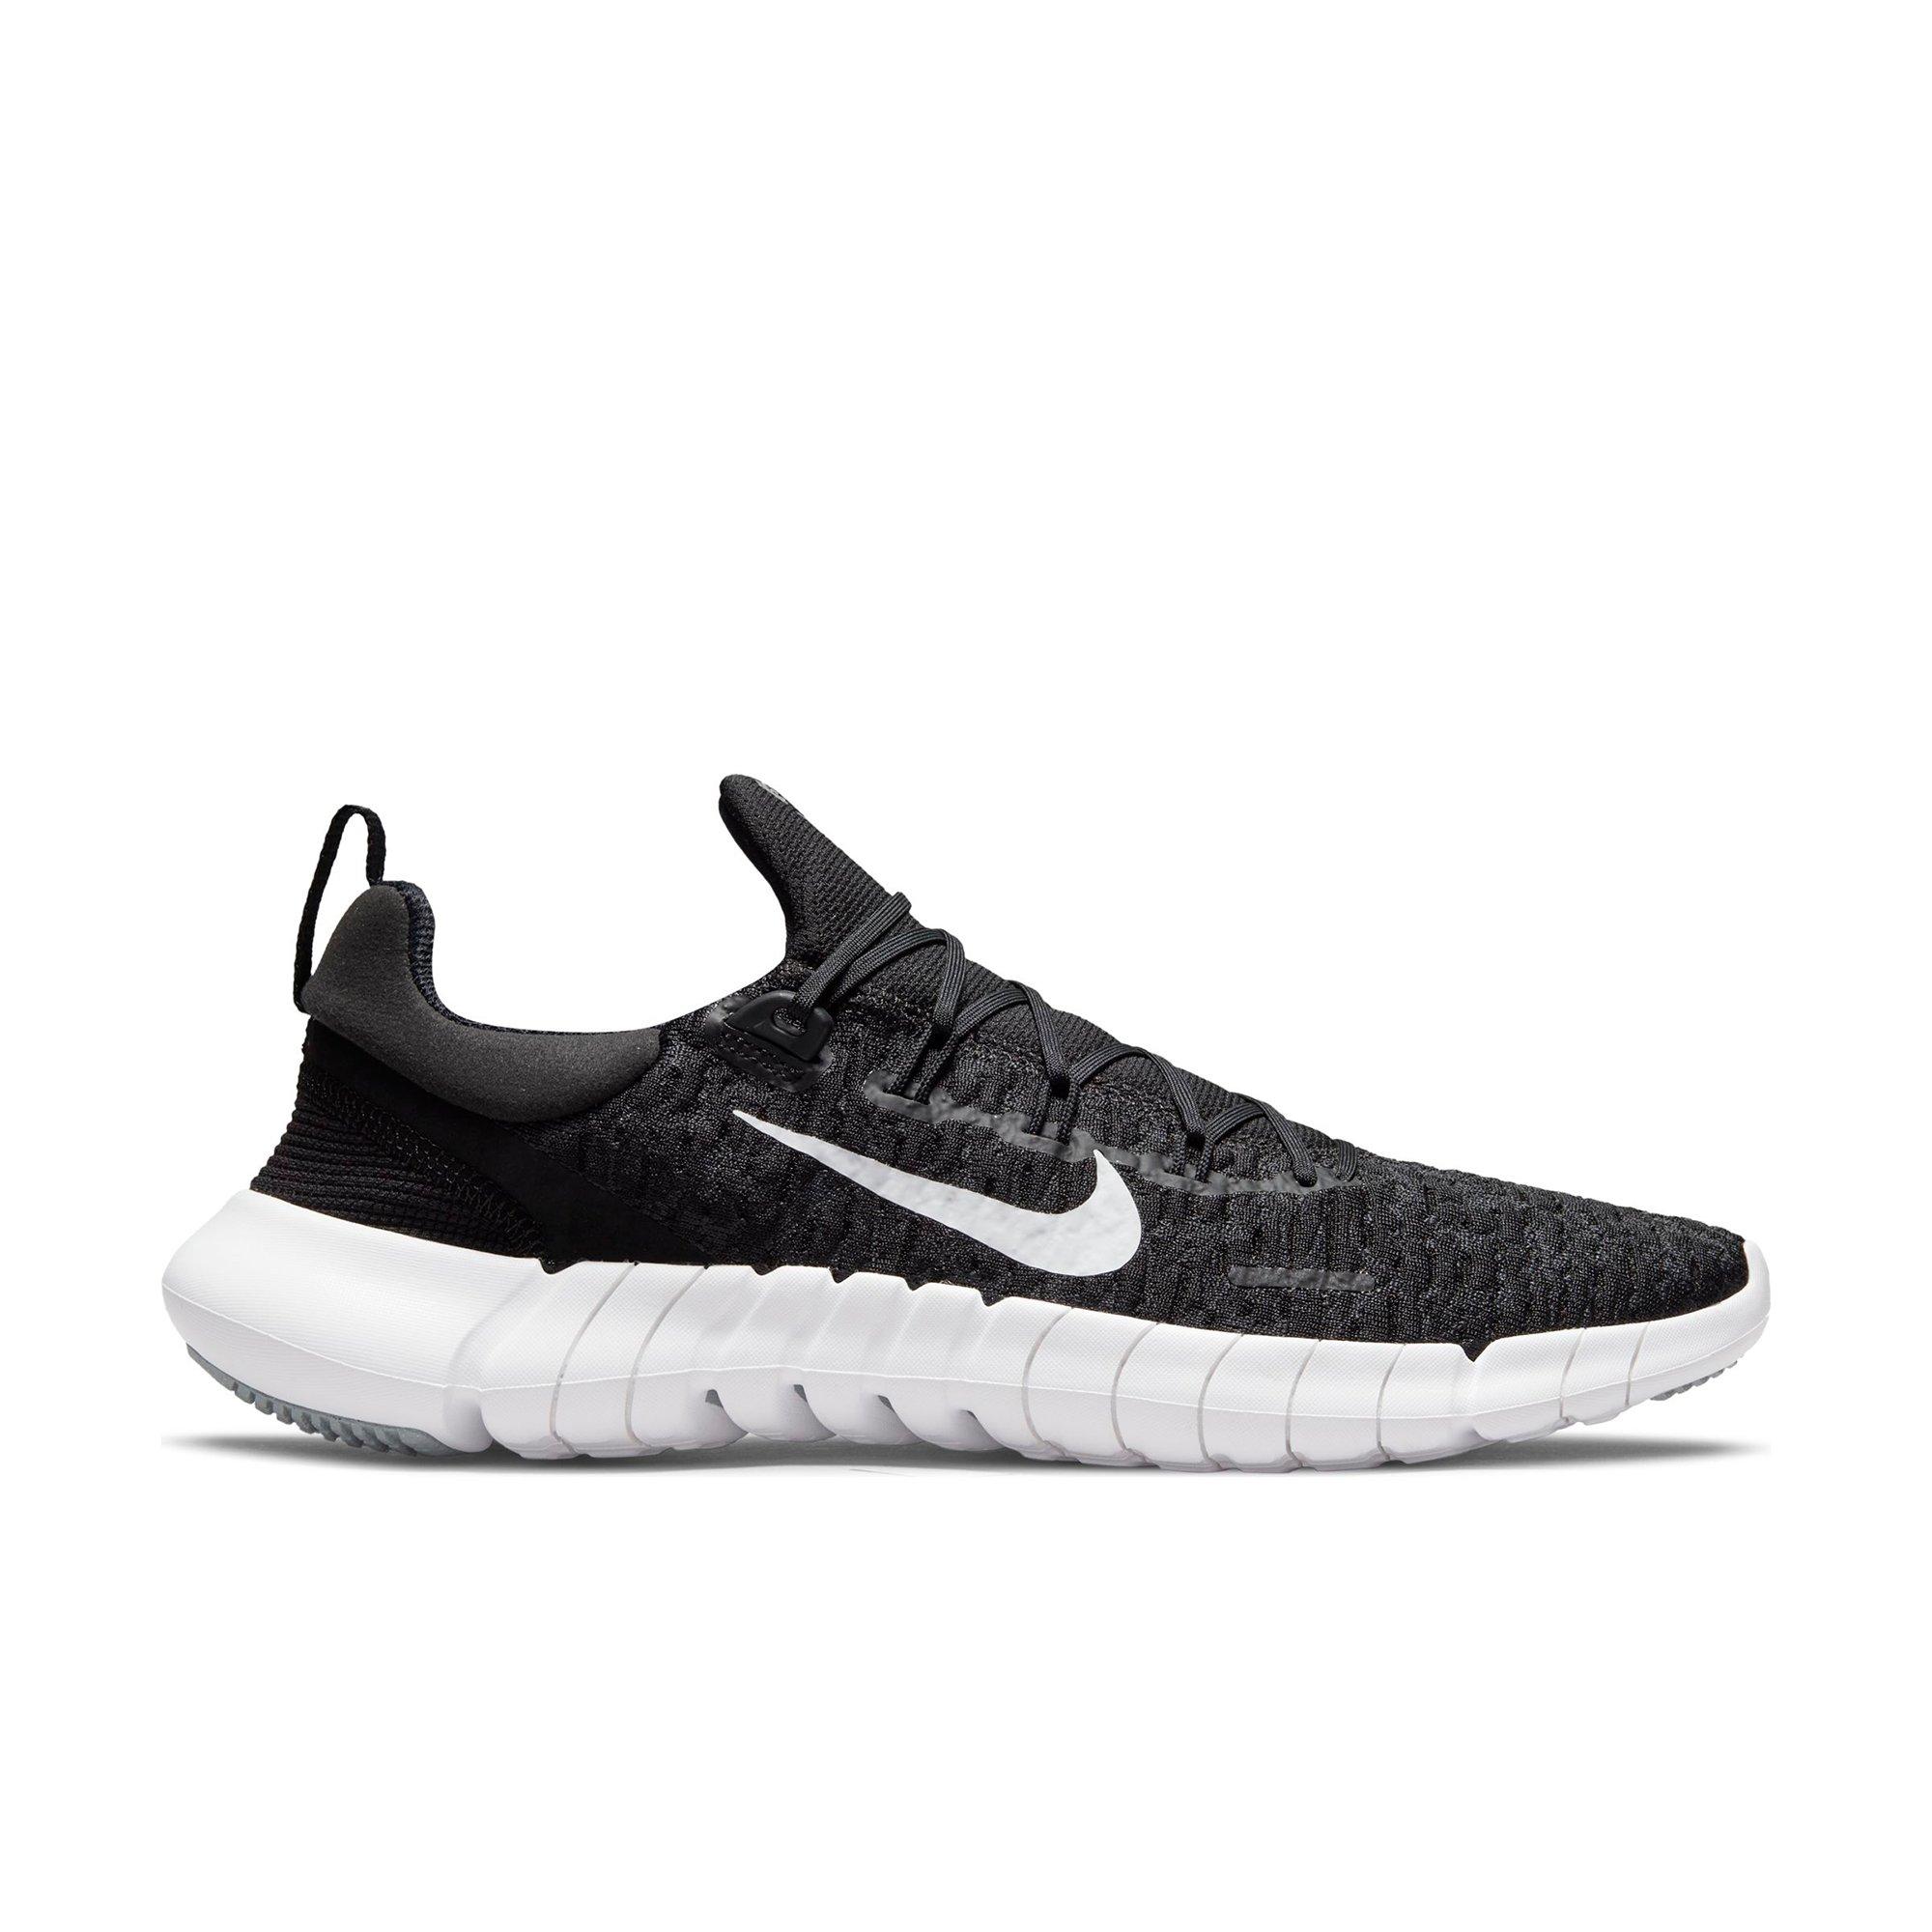 Nike Free "Black/White/Smoke Grey" Running Shoe